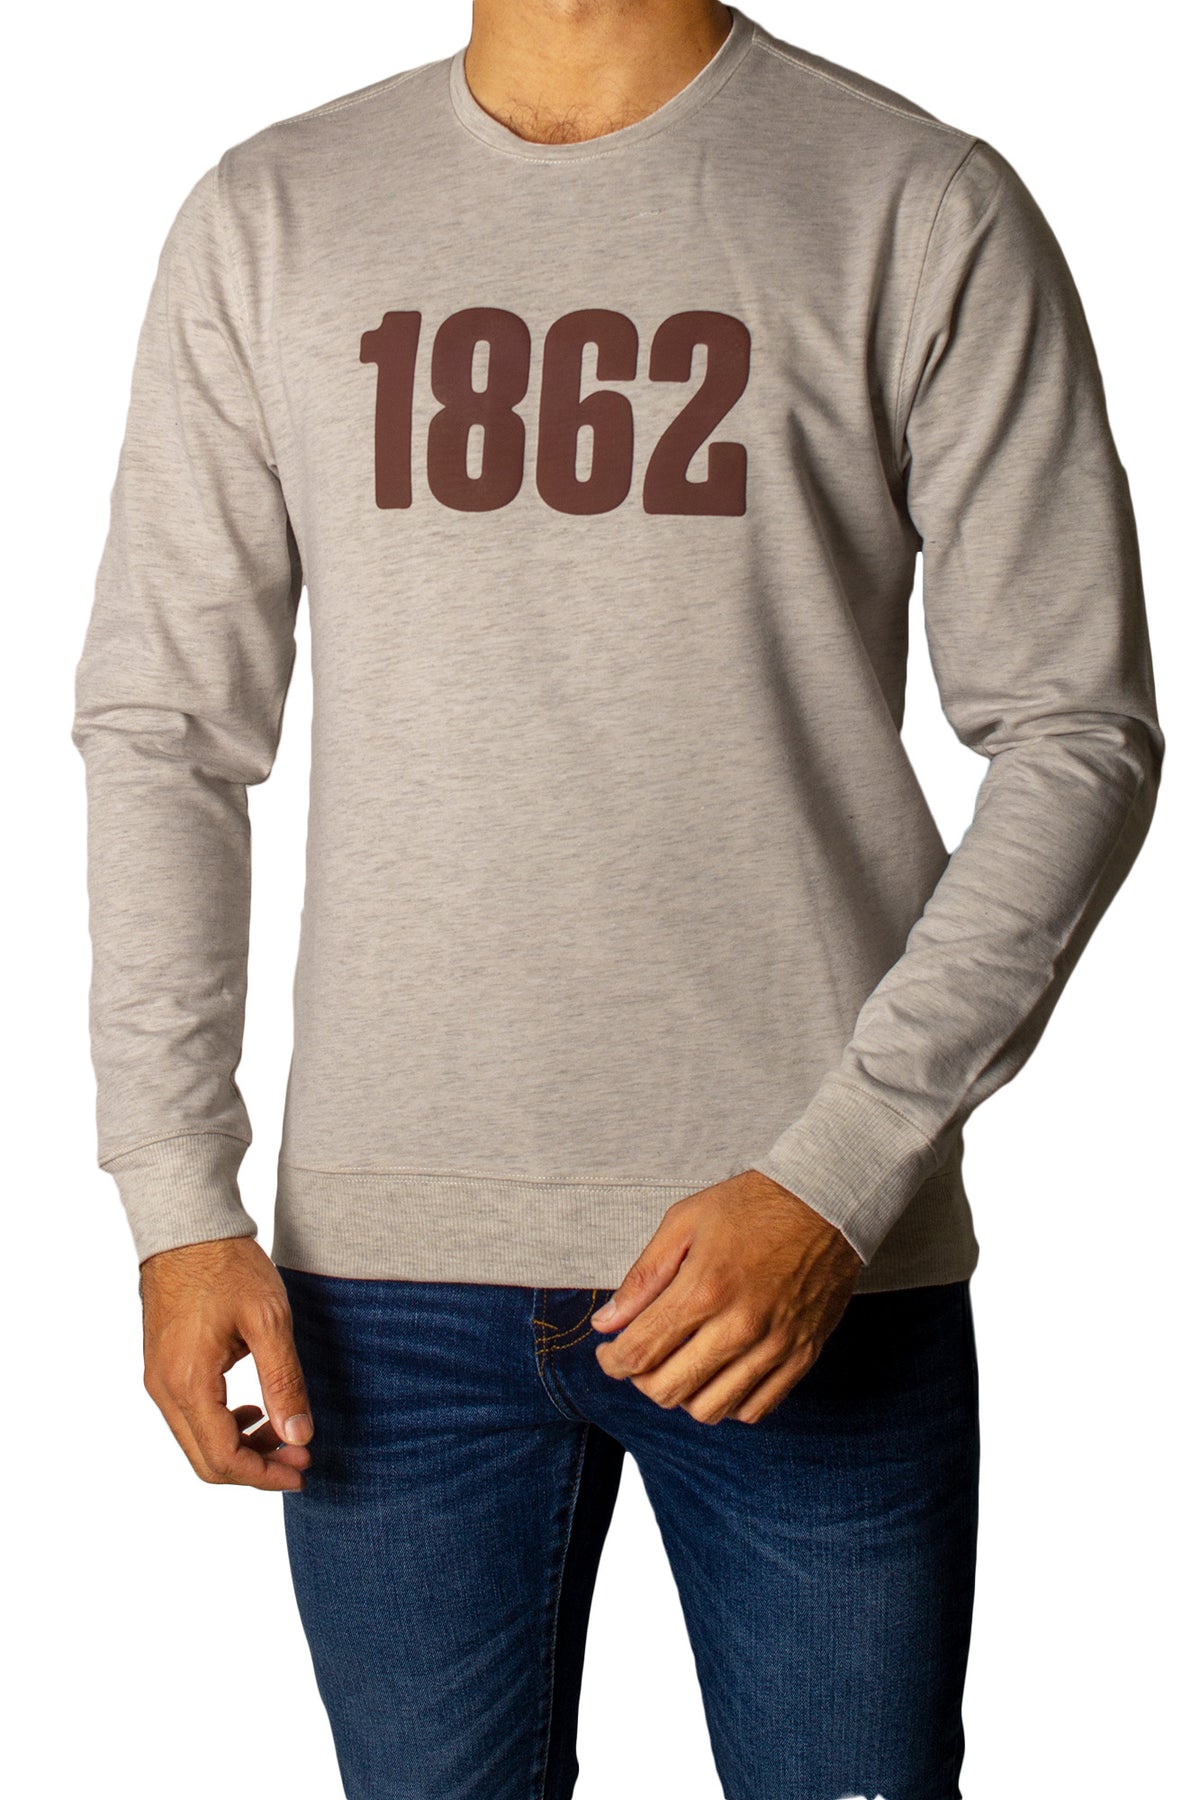 1862 Printed Full Sleeves T-Shirt Tsh-6833 Grey